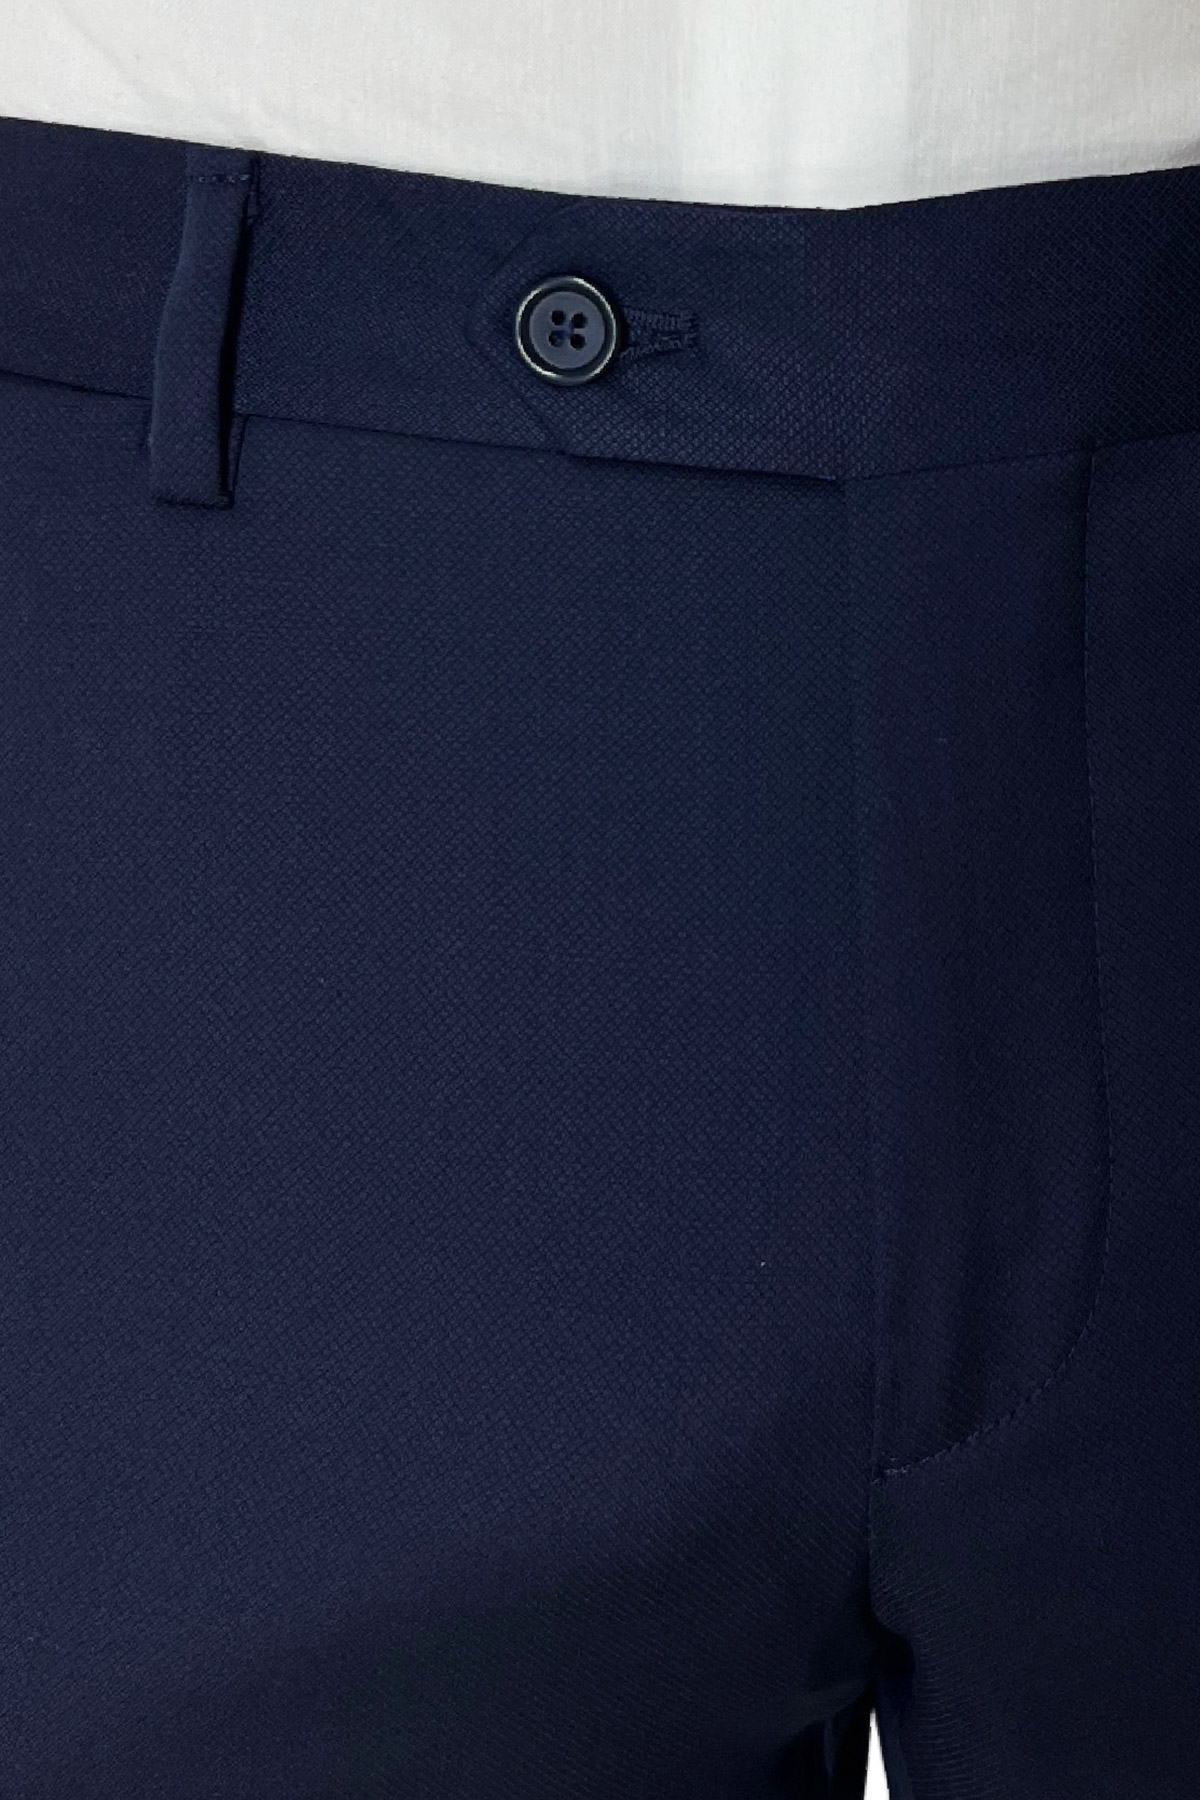 Pantalone uomo Blu Navy nido d'ape tasca america in fresco lana 100% Vitale Barberis Canonico